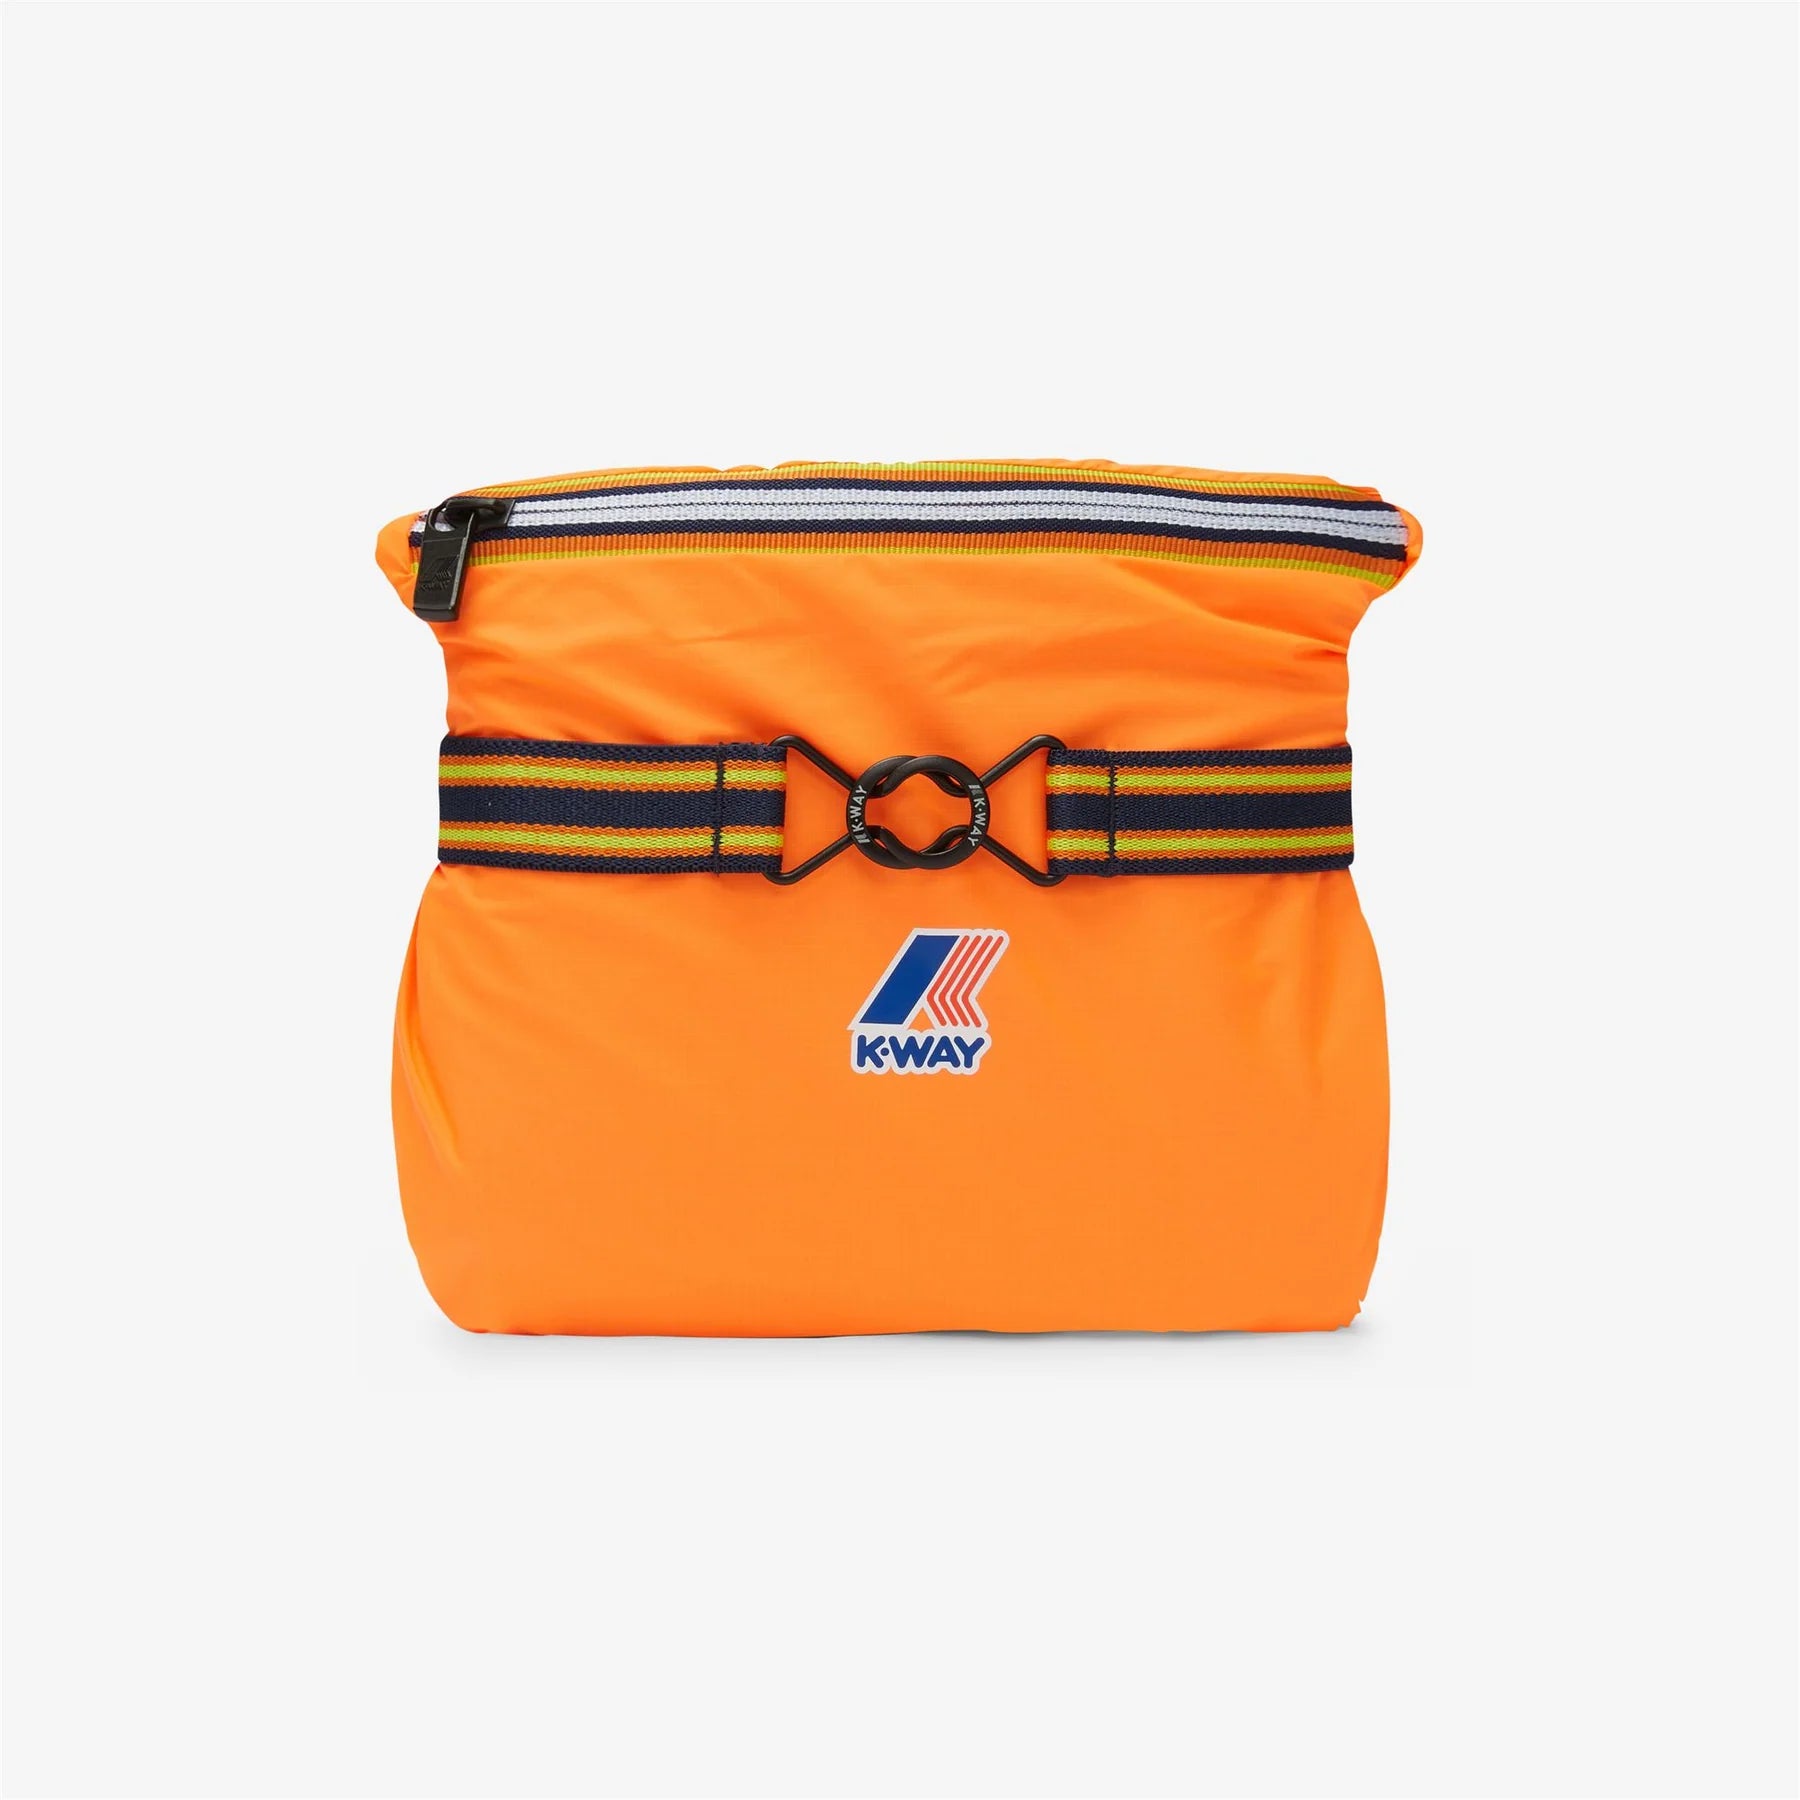 Claude - Veste de pluie pliable entièrement zippée pour enfants en orange